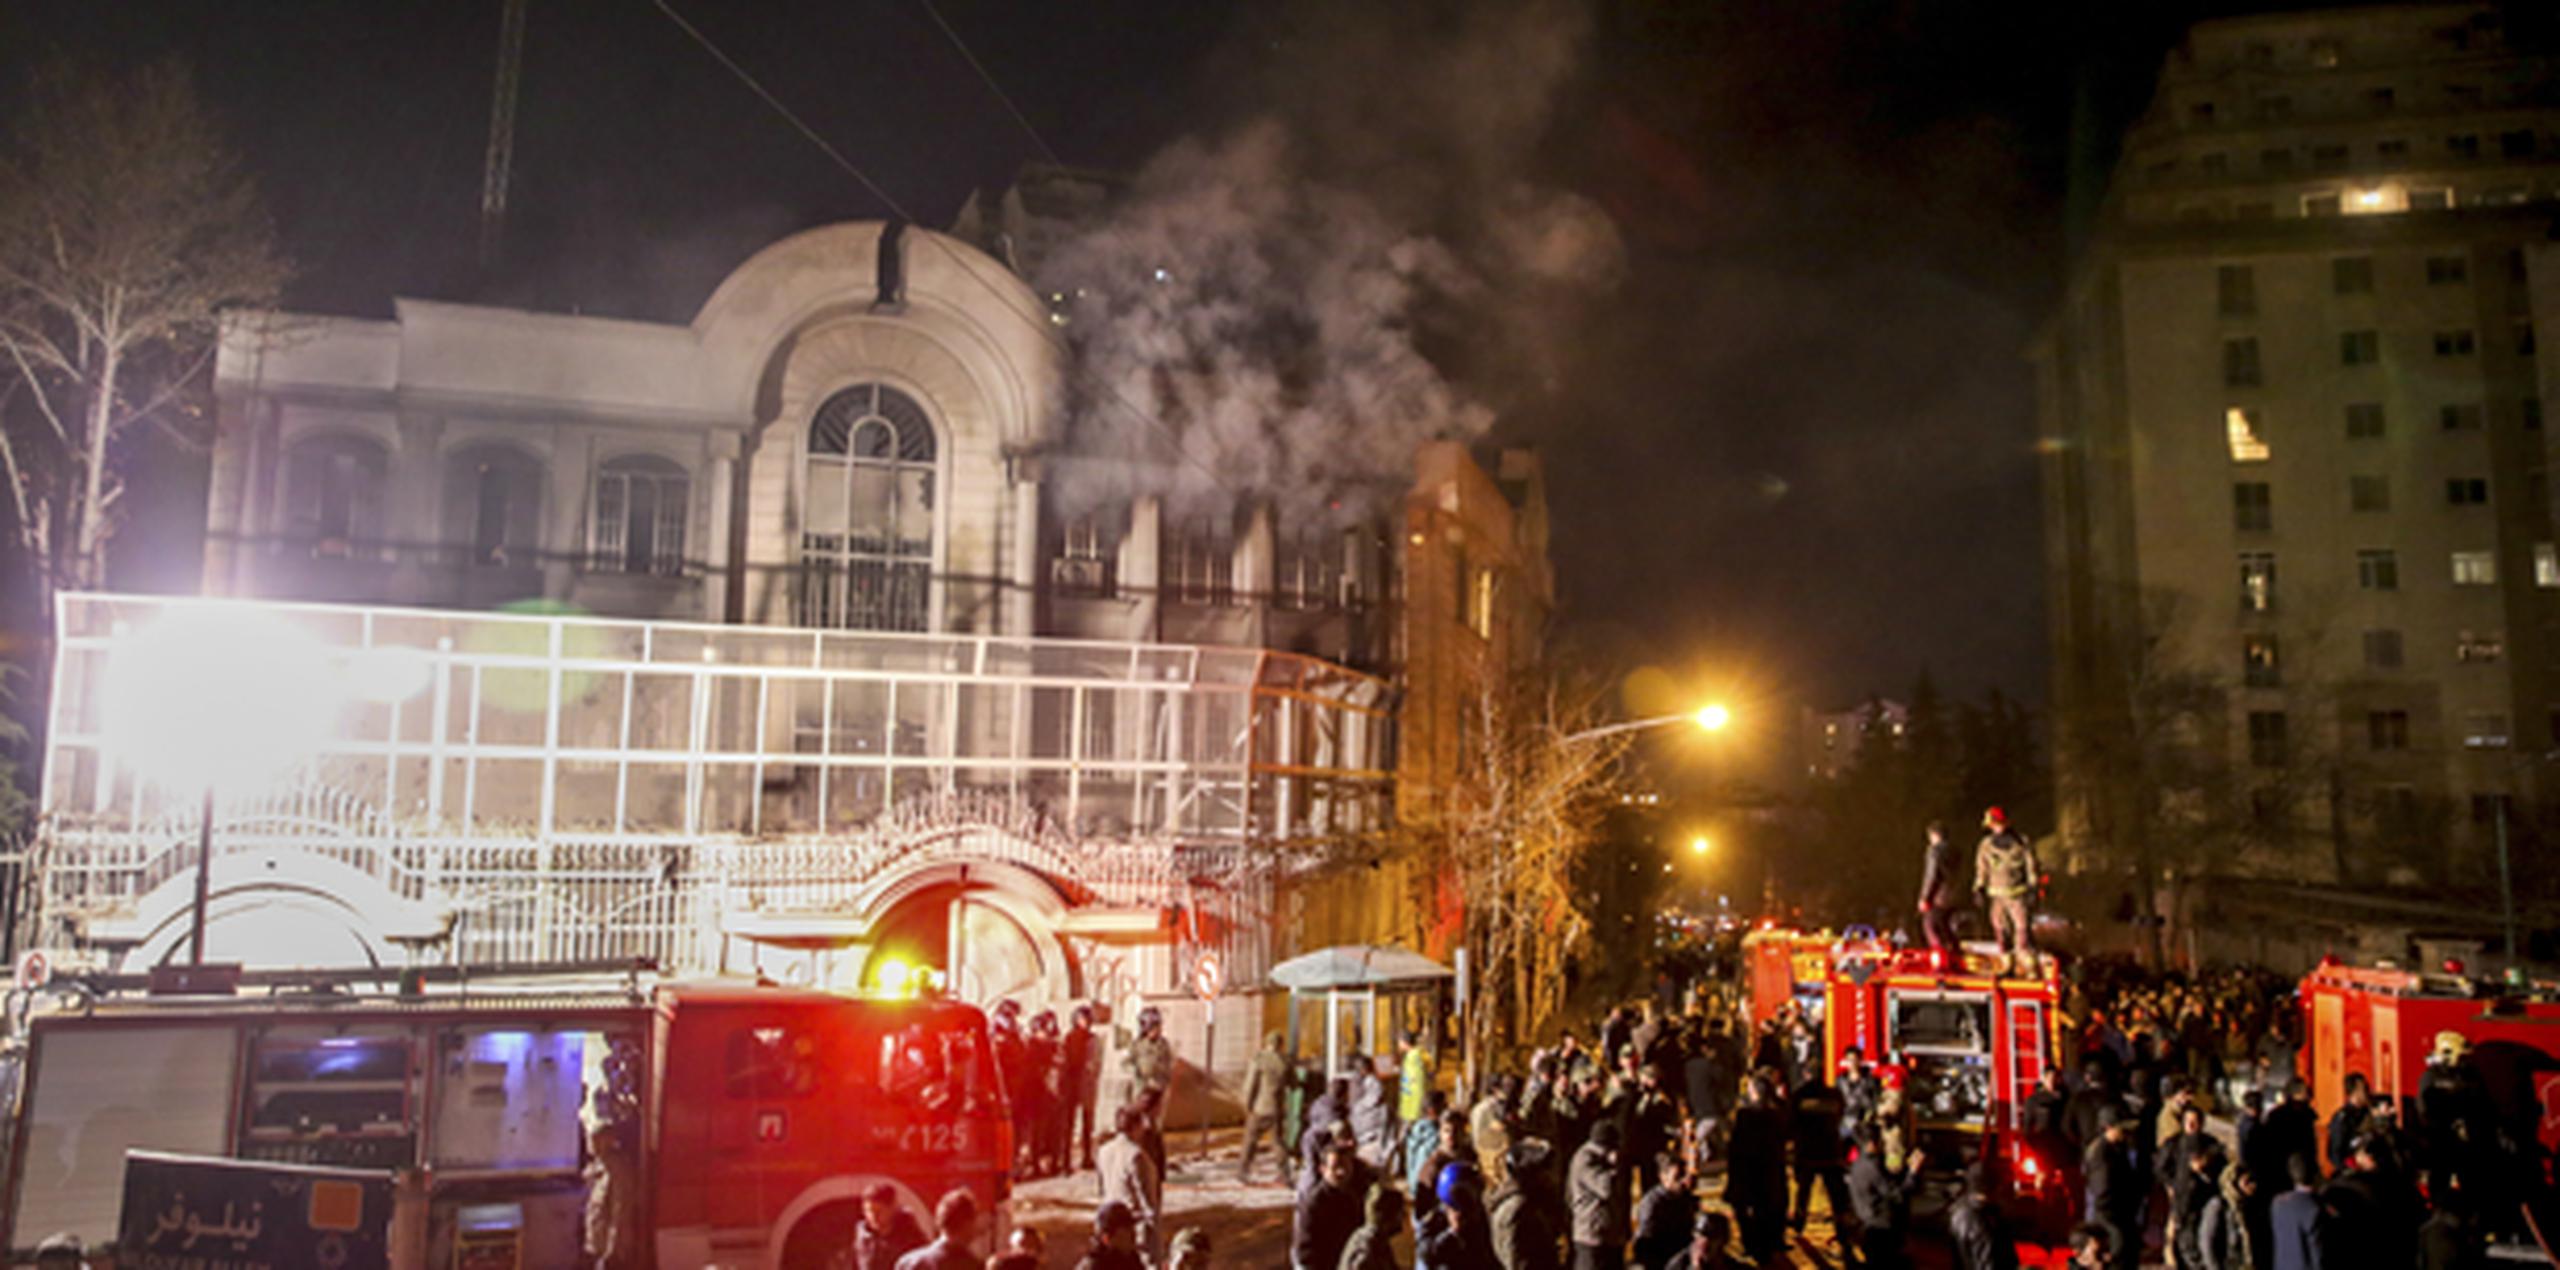 El ministerio iraní de Exteriores hizo un llamamiento a la calma después de que la policía dispersó a los encolerizados manifestantes y emitió un comunicado en el que pidió respetar las embajadas. (Vía AP Foto/Mohammadreza Nadimi/ISNA)
